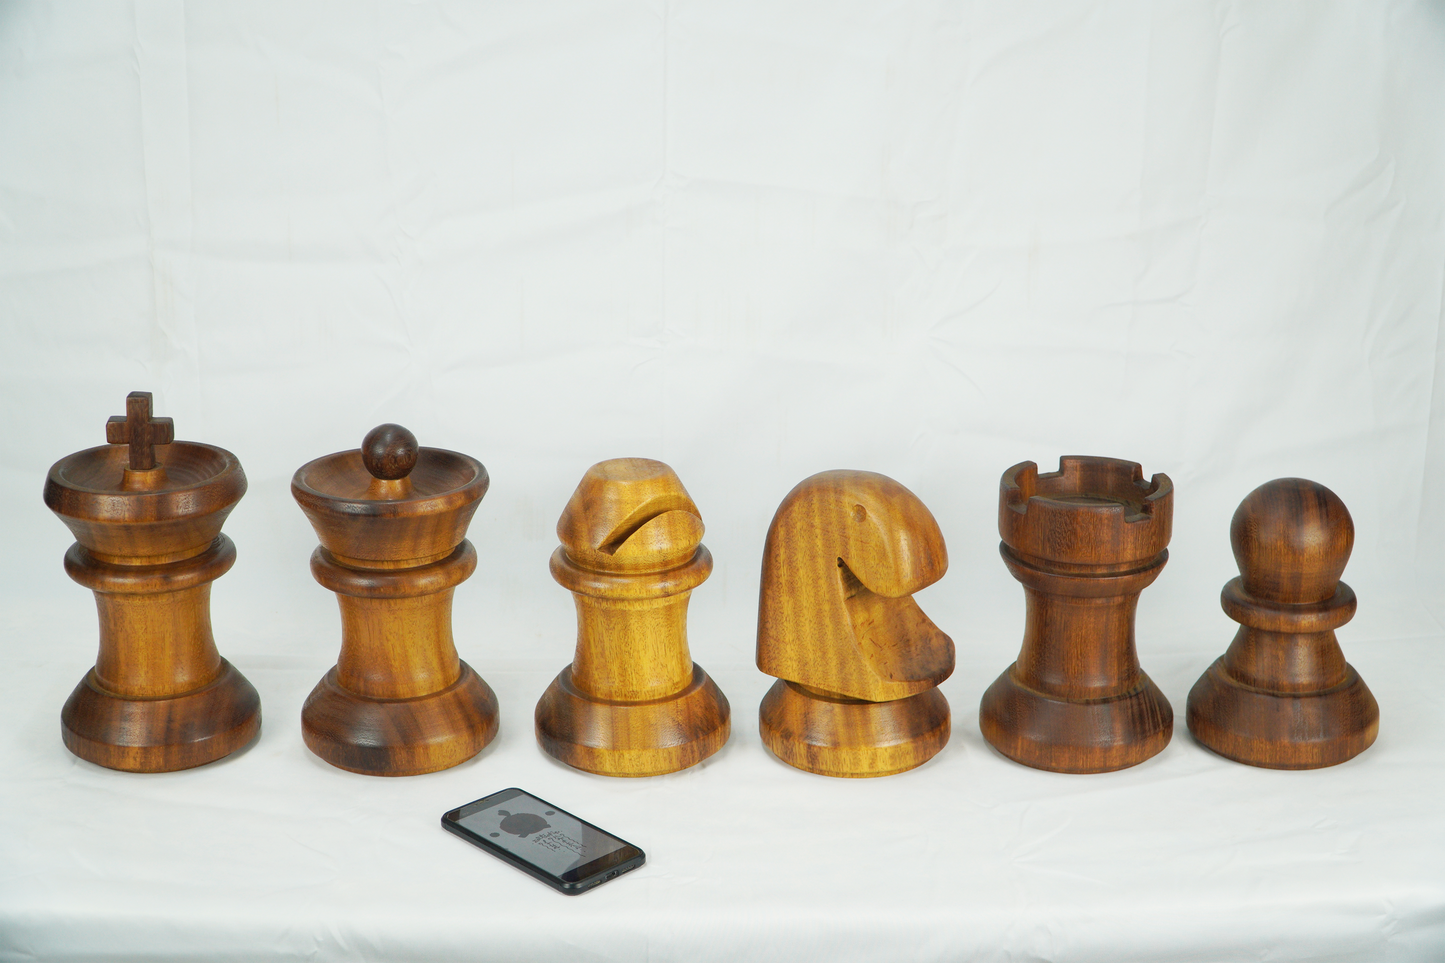 Figura decorativa de madera Reina ajedrez